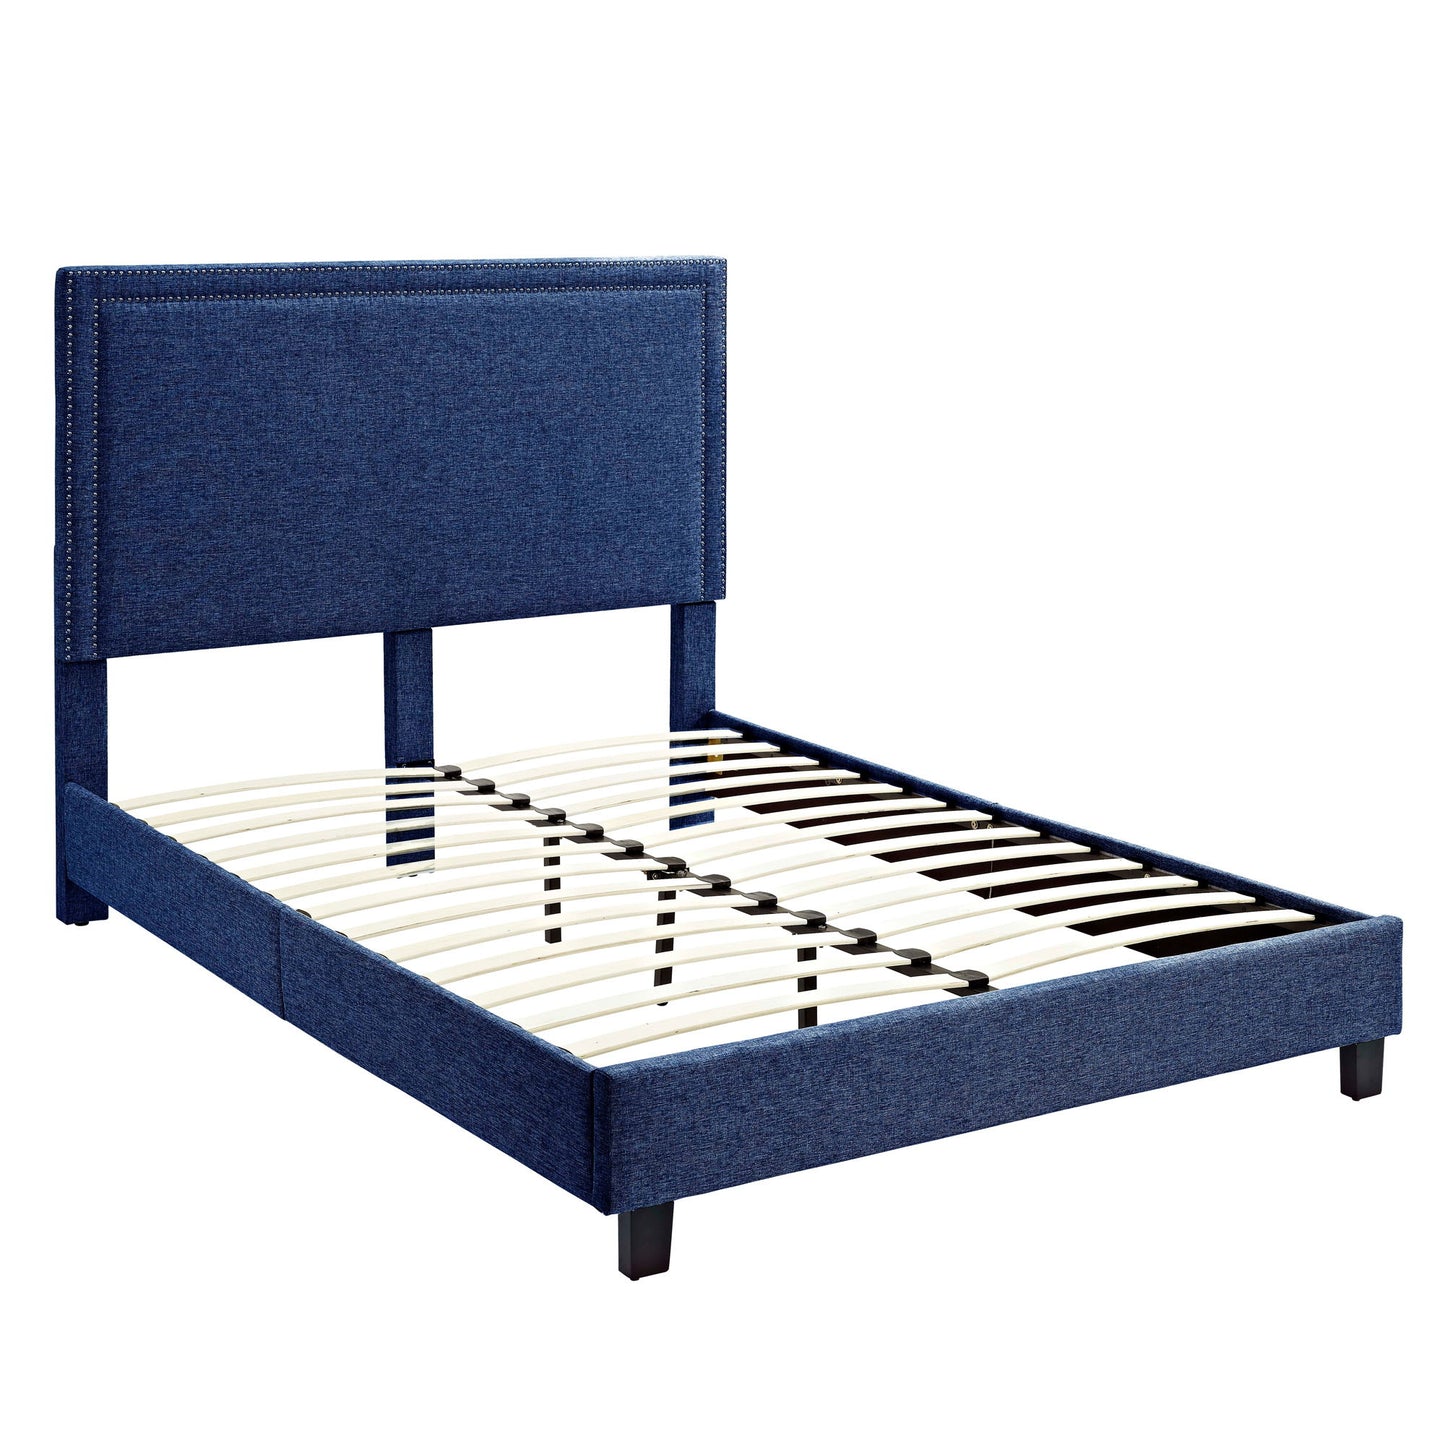 Erica - Upholstered Platform Bed